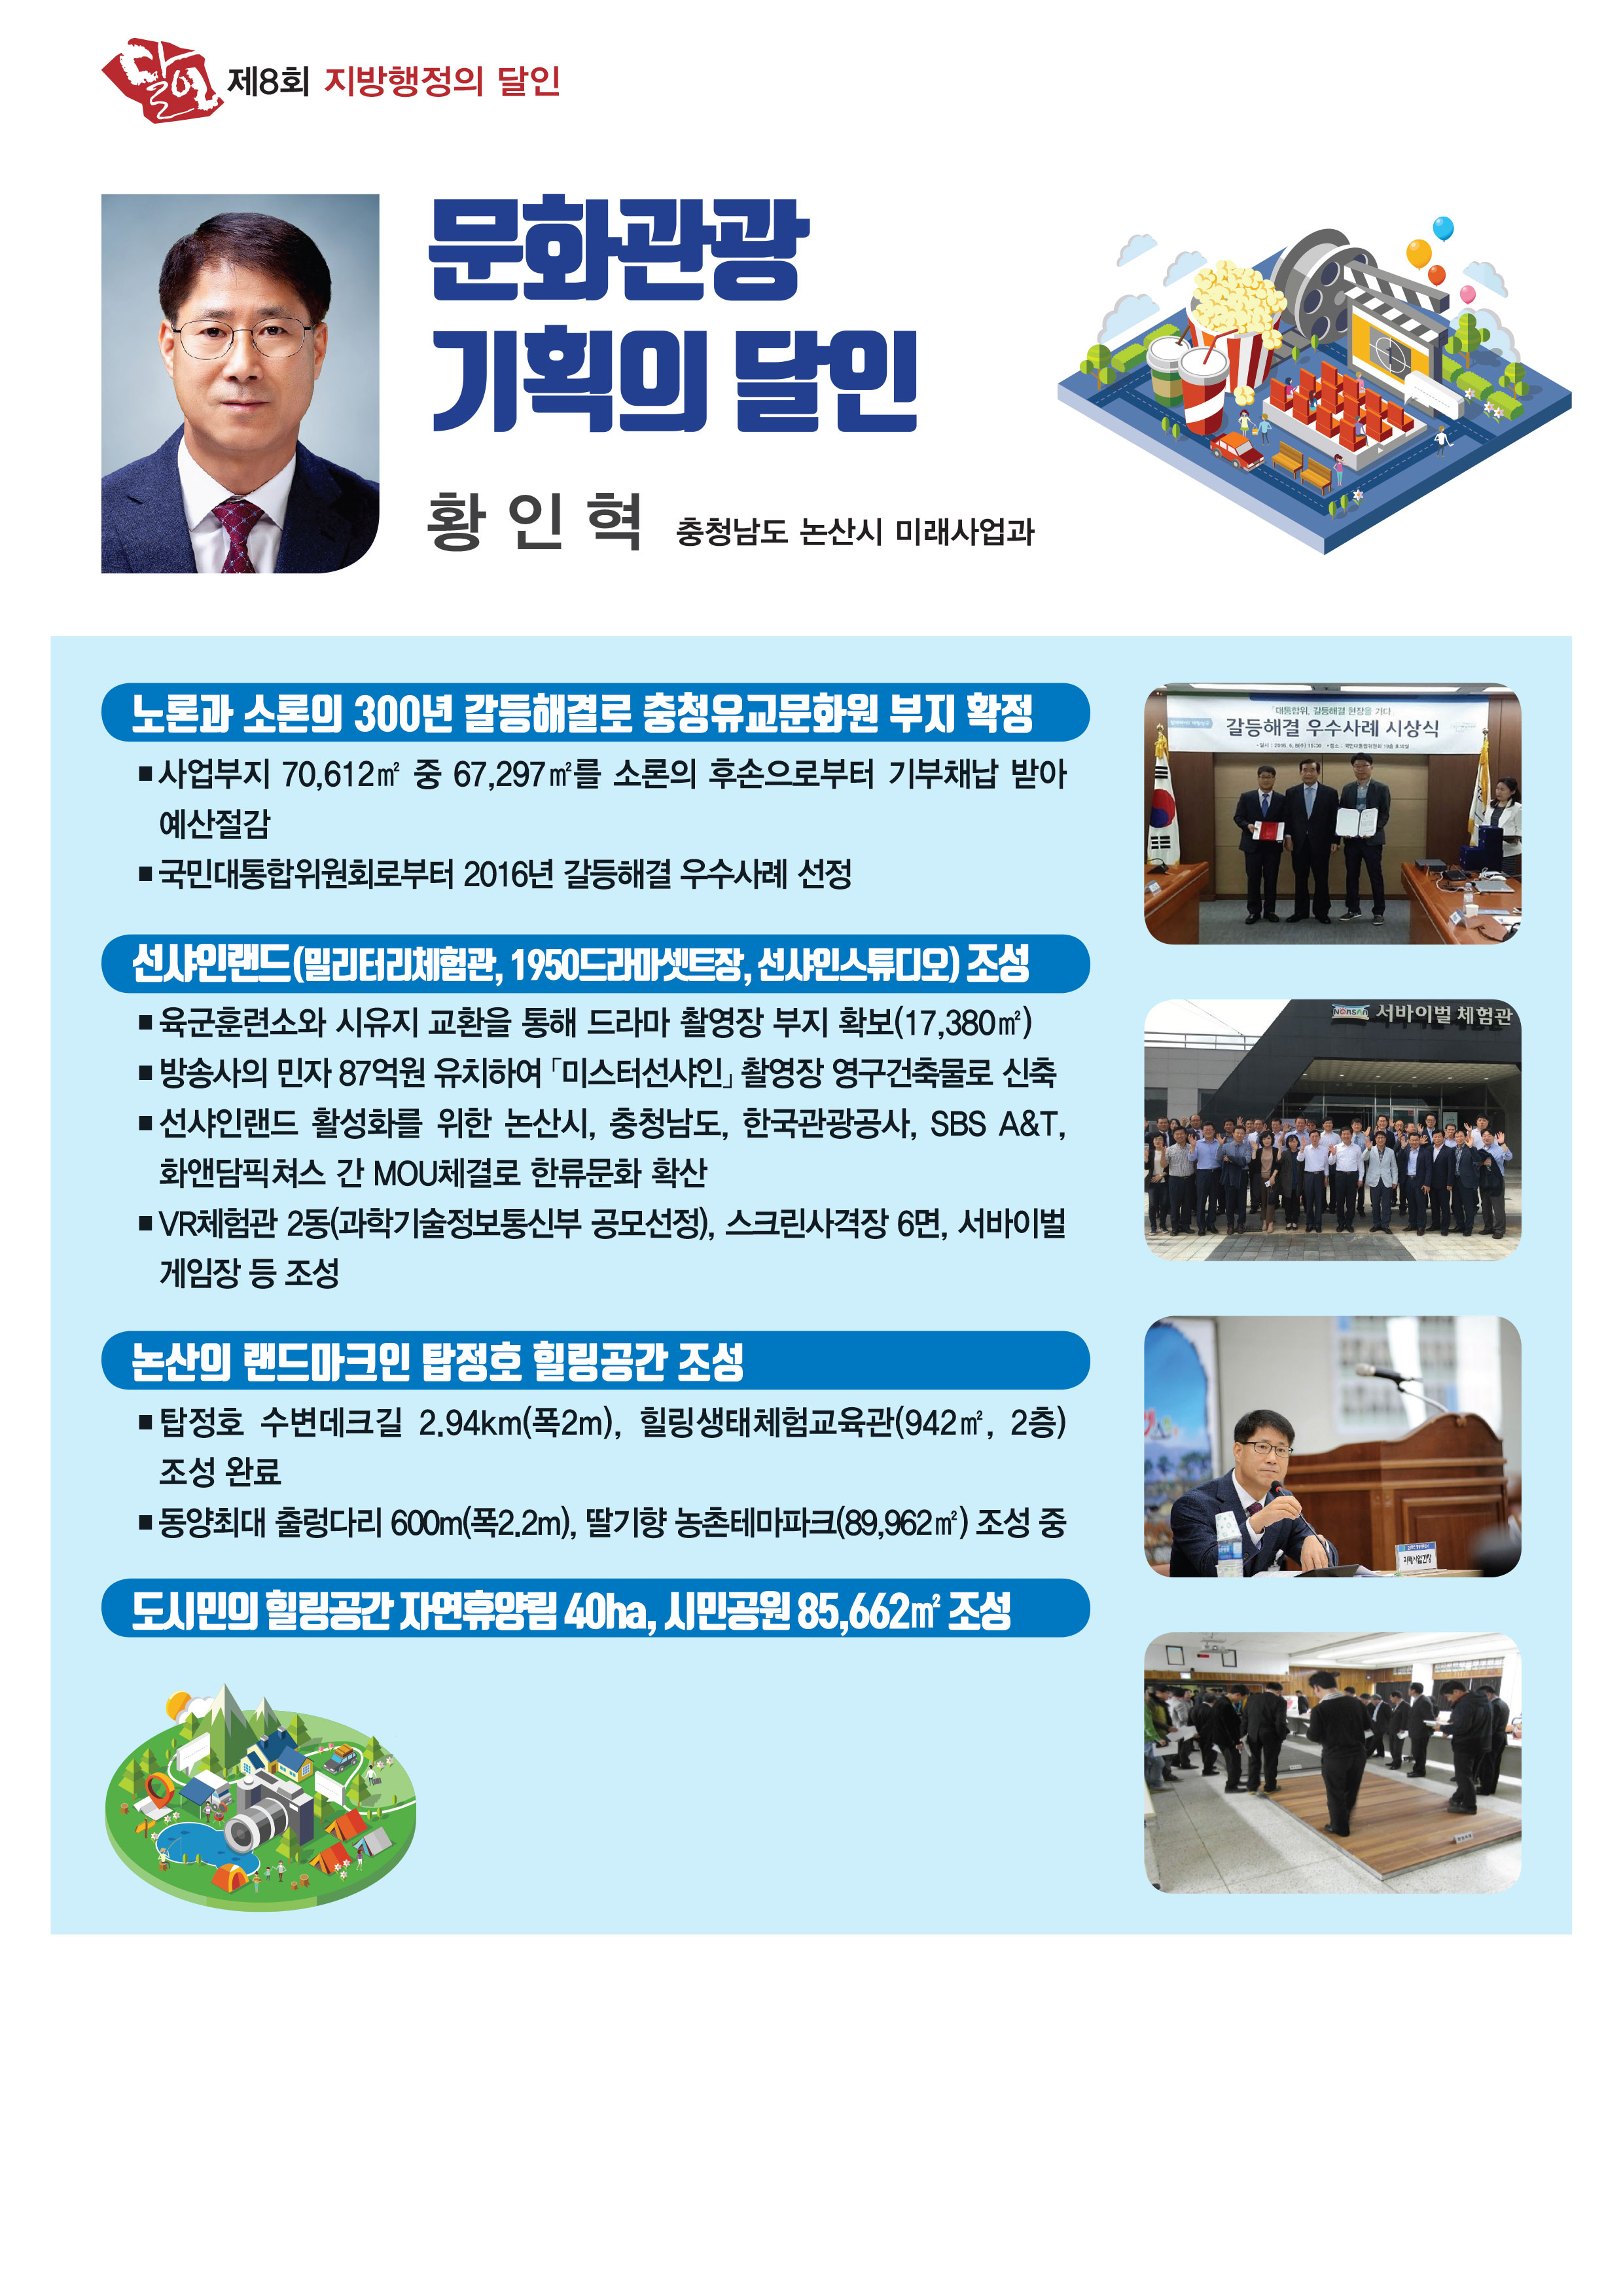 제8회 지방행정의 달인 -  문화관광 기획의 달인 황인혁